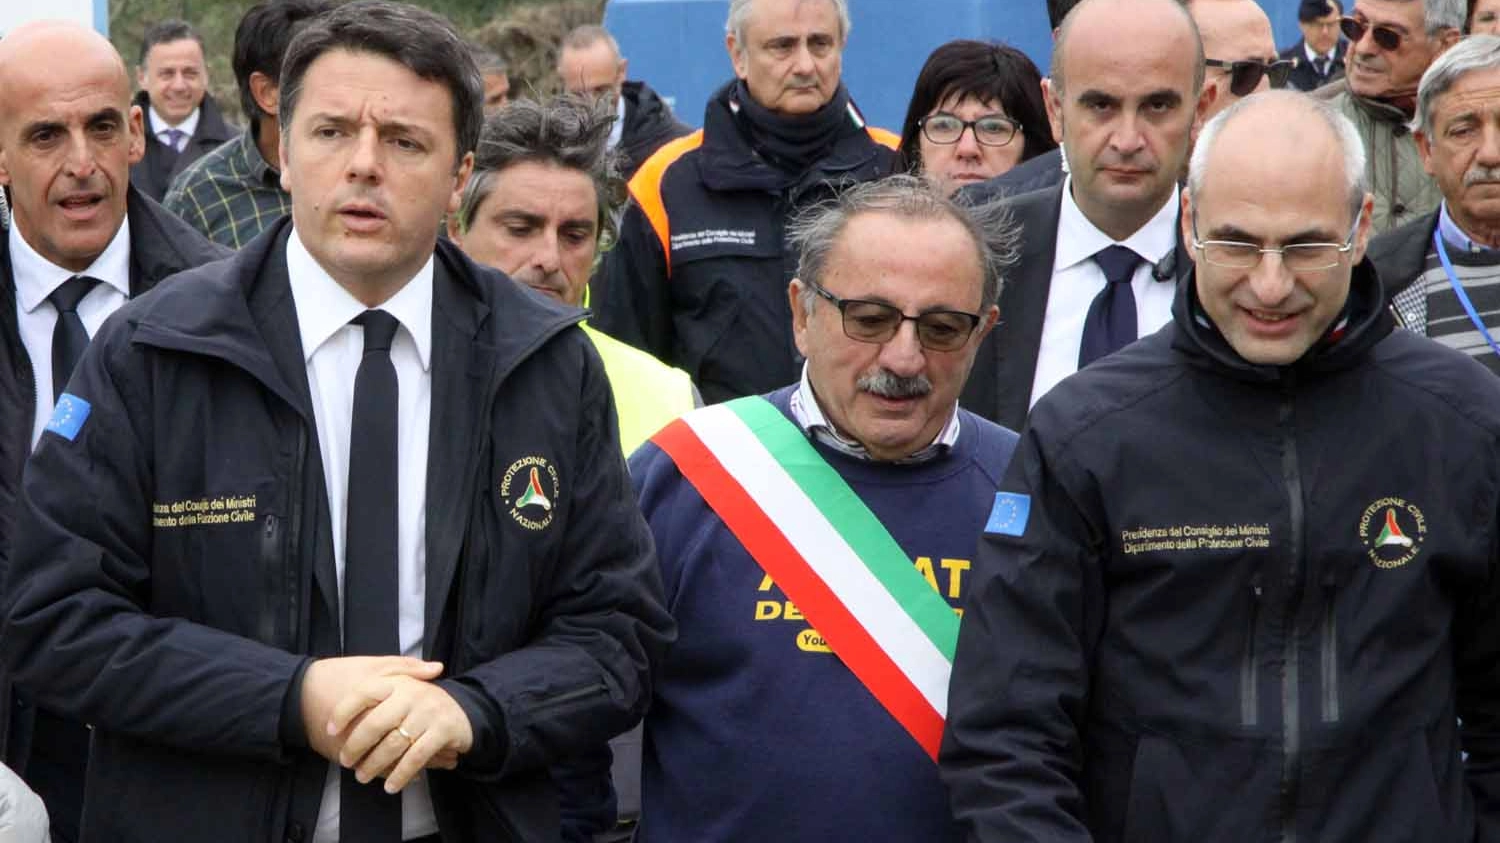 Il premier Renzi in visita ad Arquata